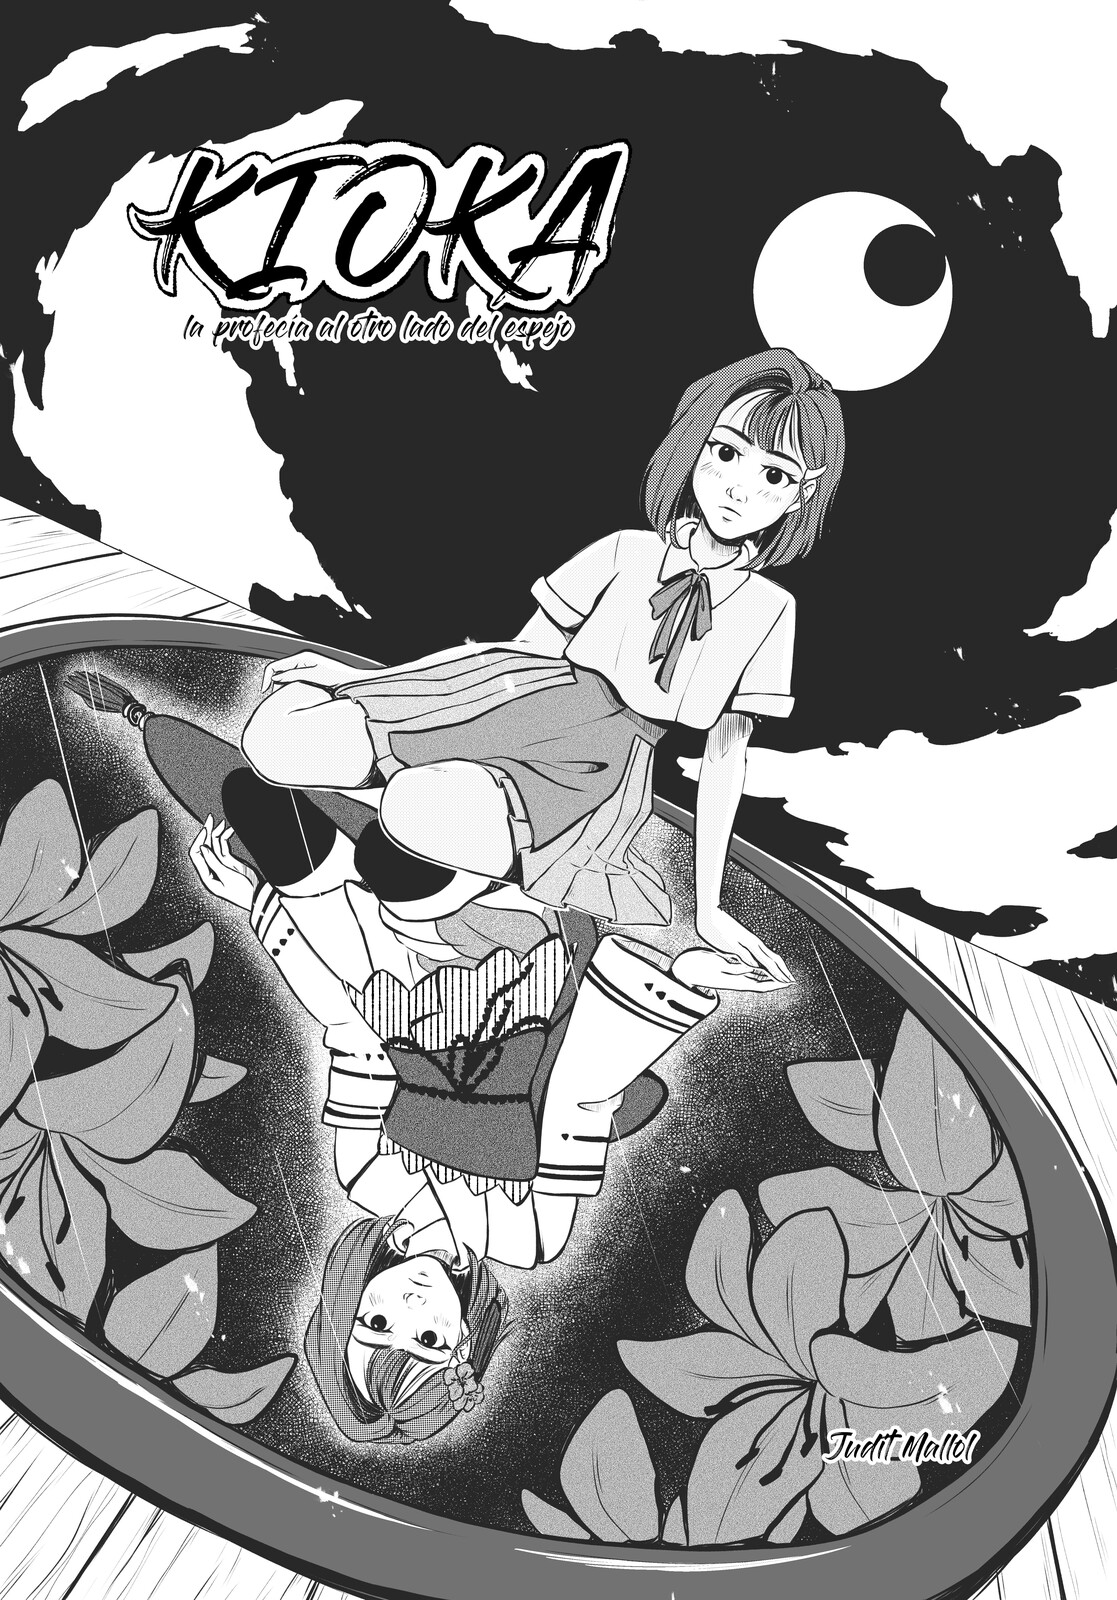 Cover for manga story "Kioka. La profecía al otro lado del espejo" part 1. (PLANETA MANGA 7 - 2021).